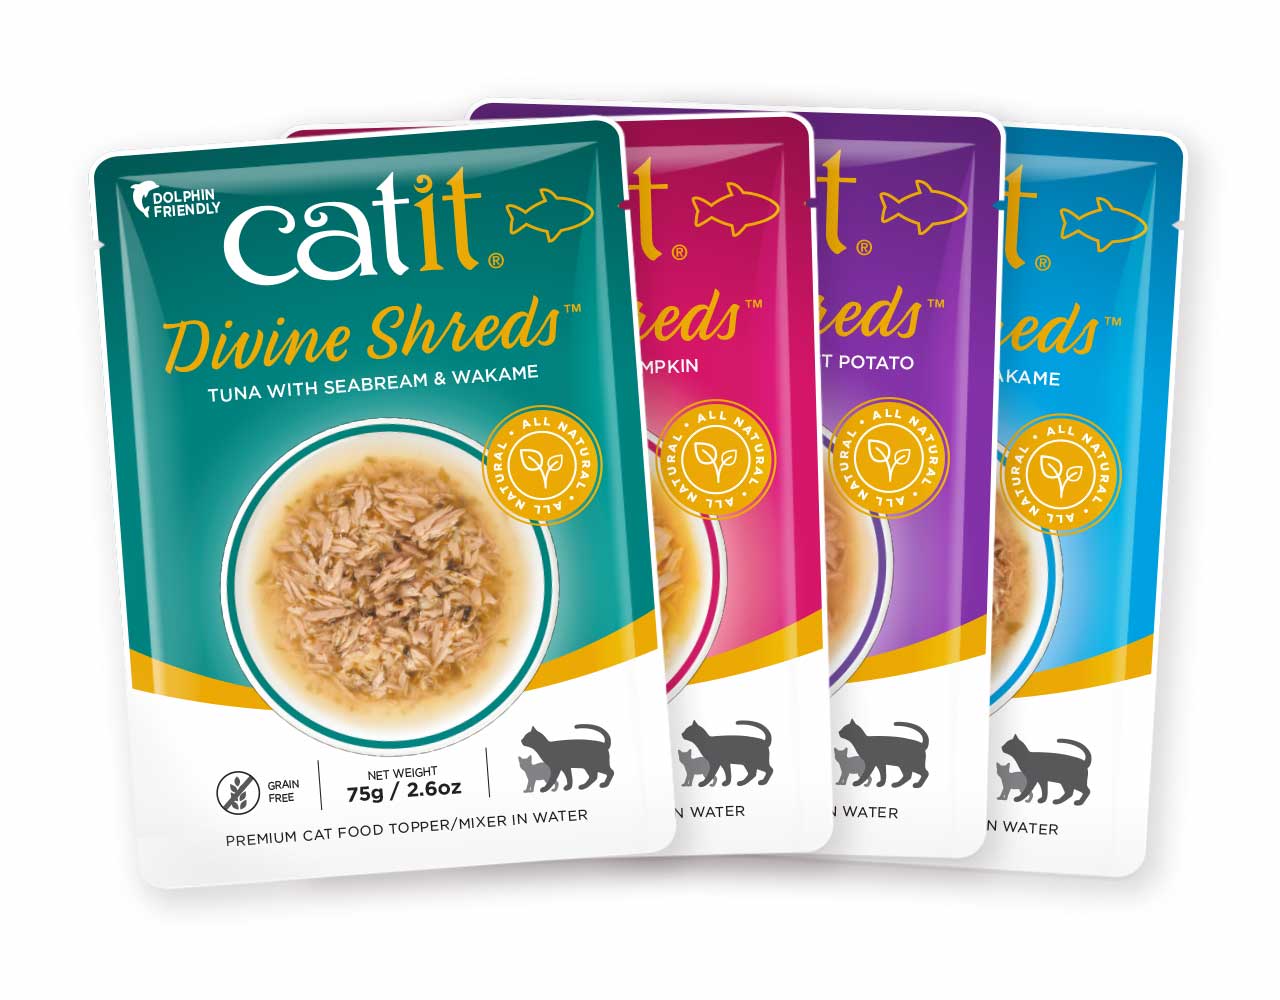 Catit Divine Shreds Tuna varieties